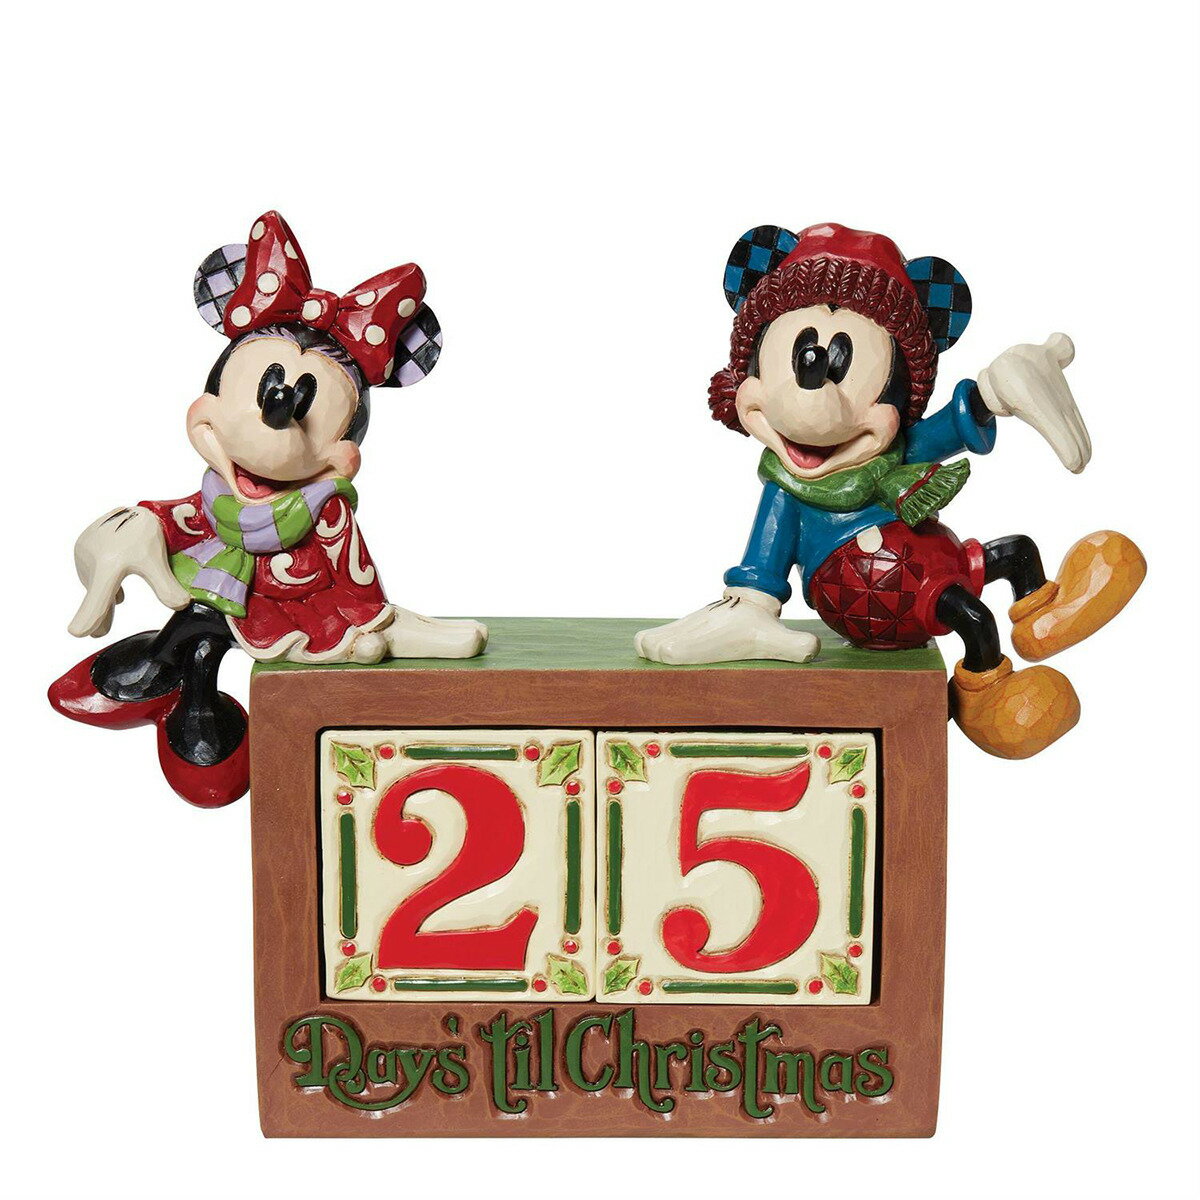 ジム ショア Jim Shore ディズニー トラディション Disney Traditions ミッキー&ミニー カウントダウンブロック 置物 フィギュア 人形 6013057 ミッキーマウス ミニーマウス インテリア クリスマス